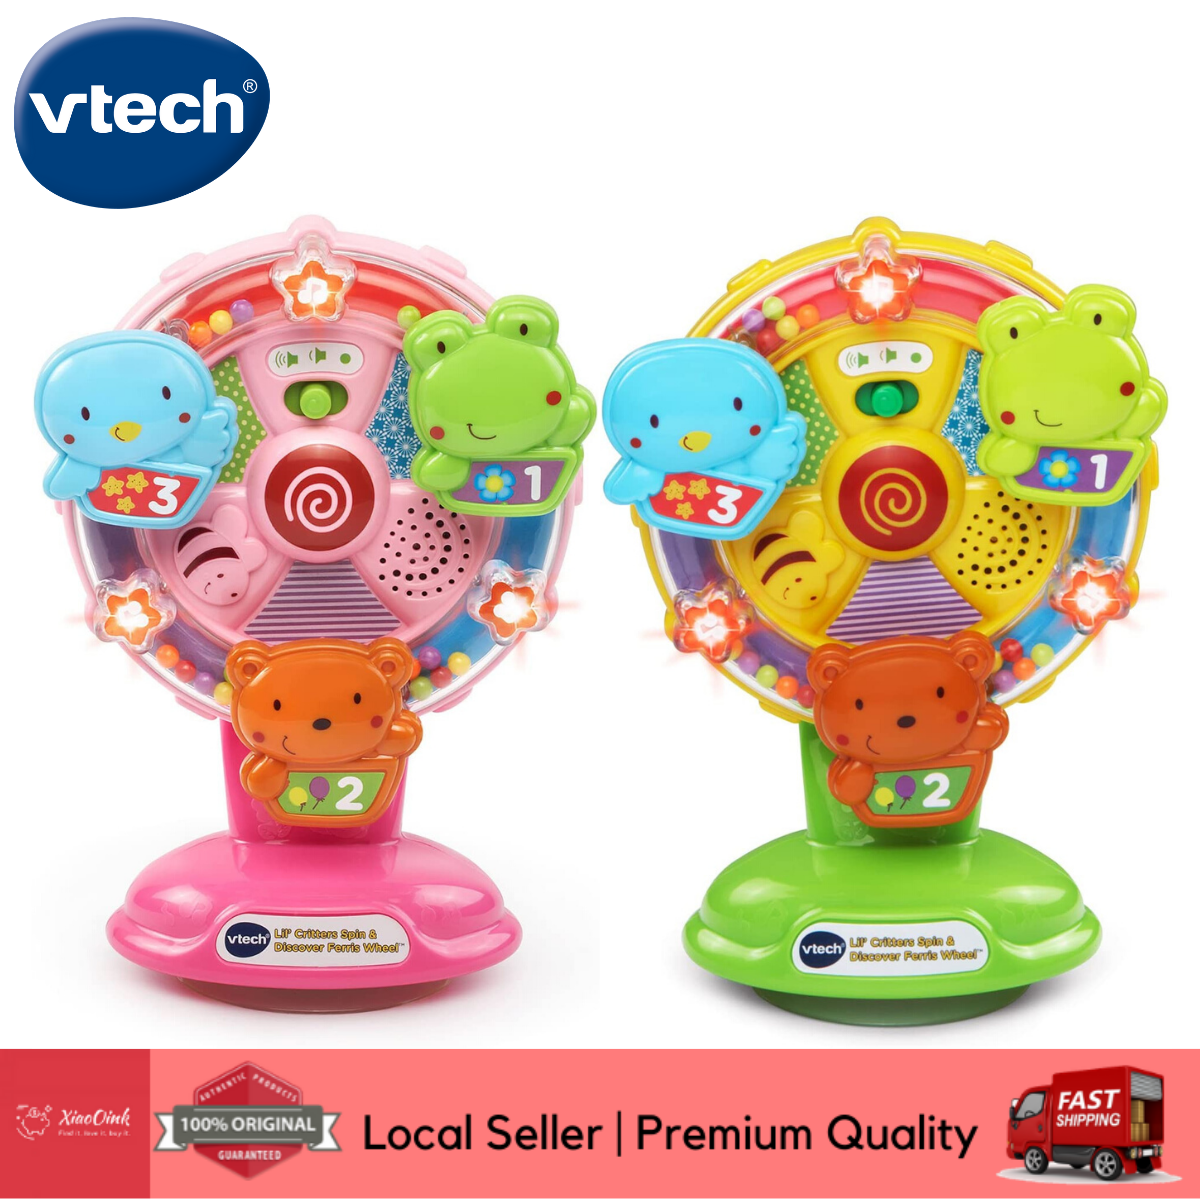 vtech childrens toys